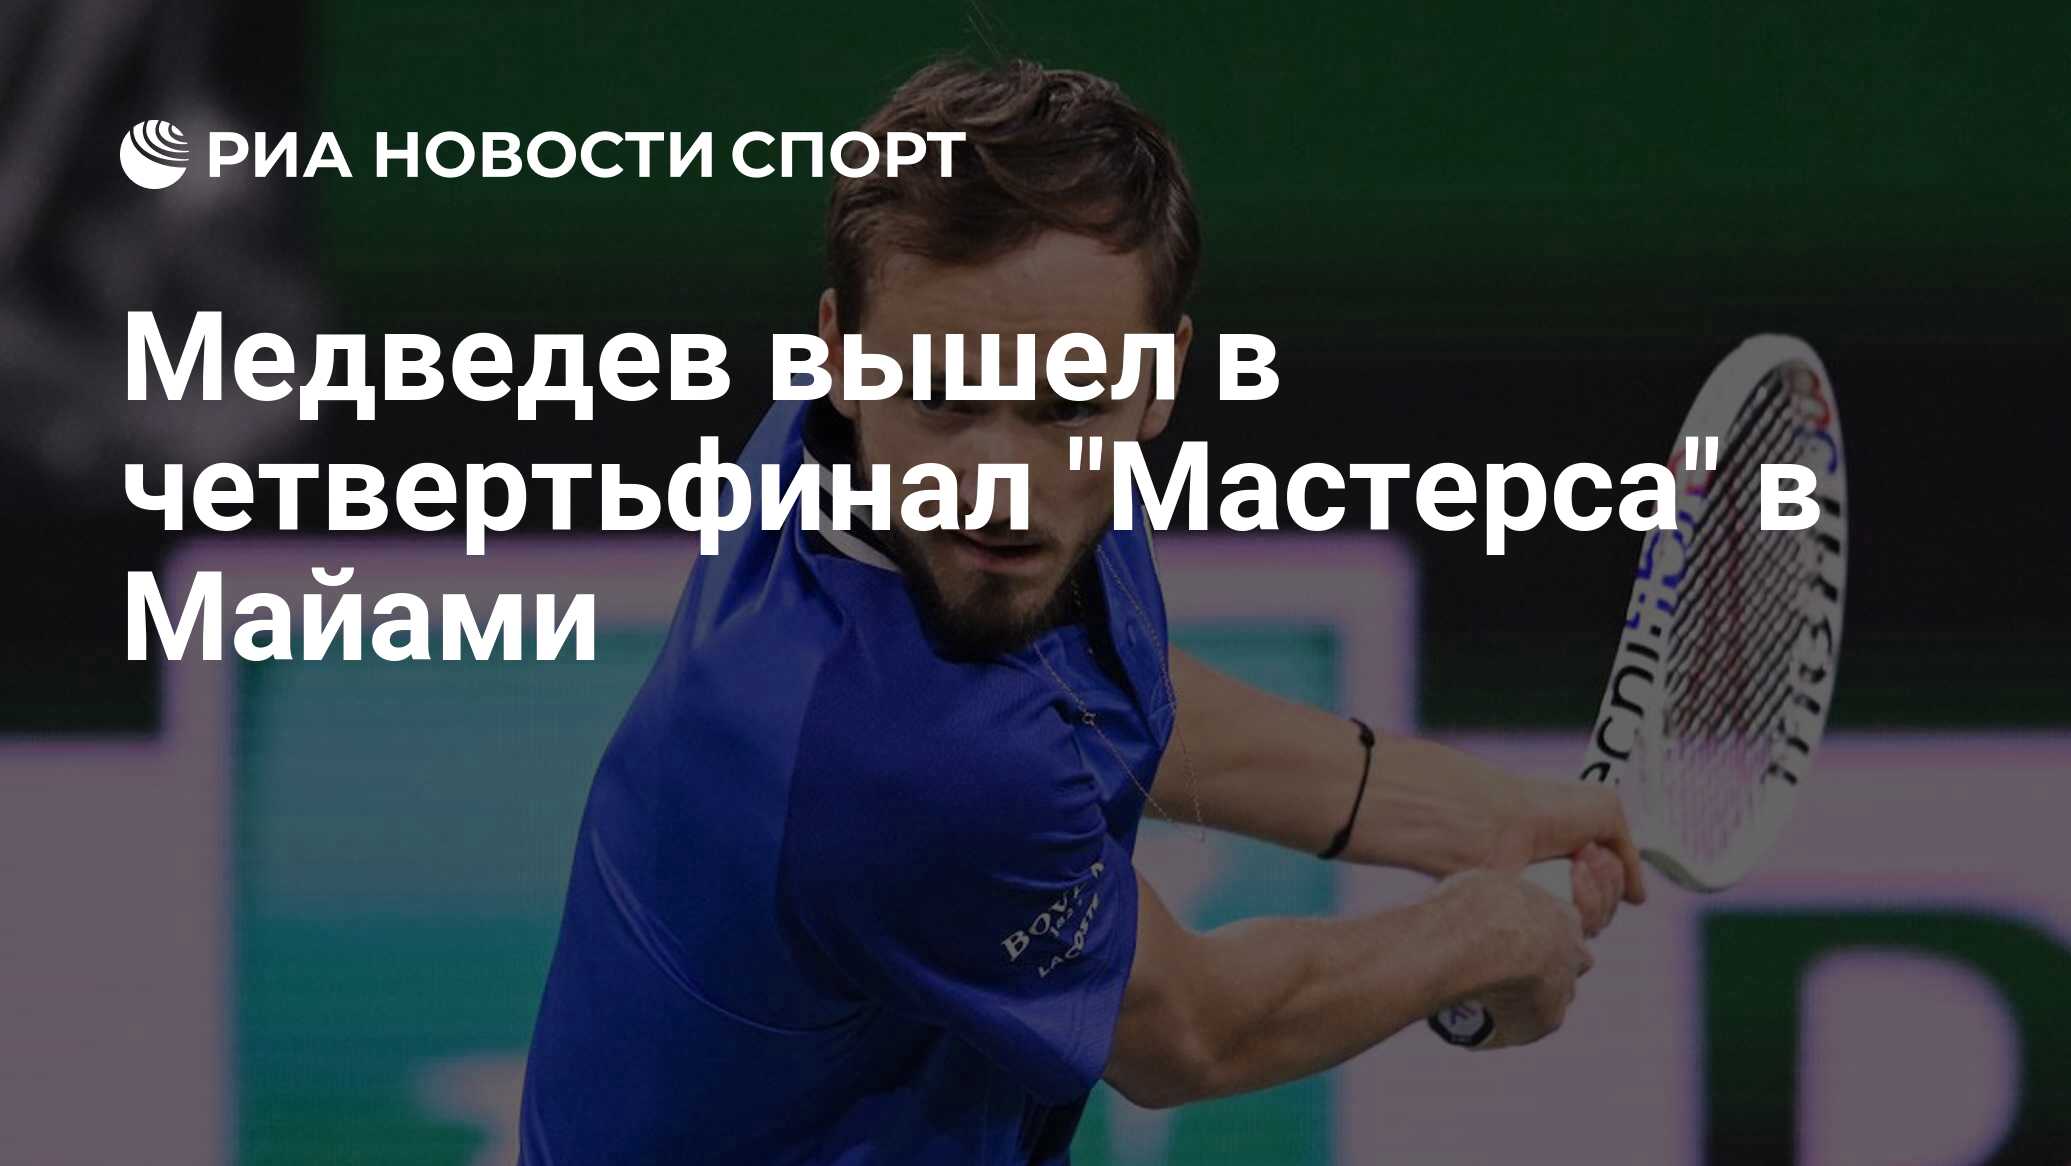 Медведев вышел в четвертьфинал "Мастерса" в Майами